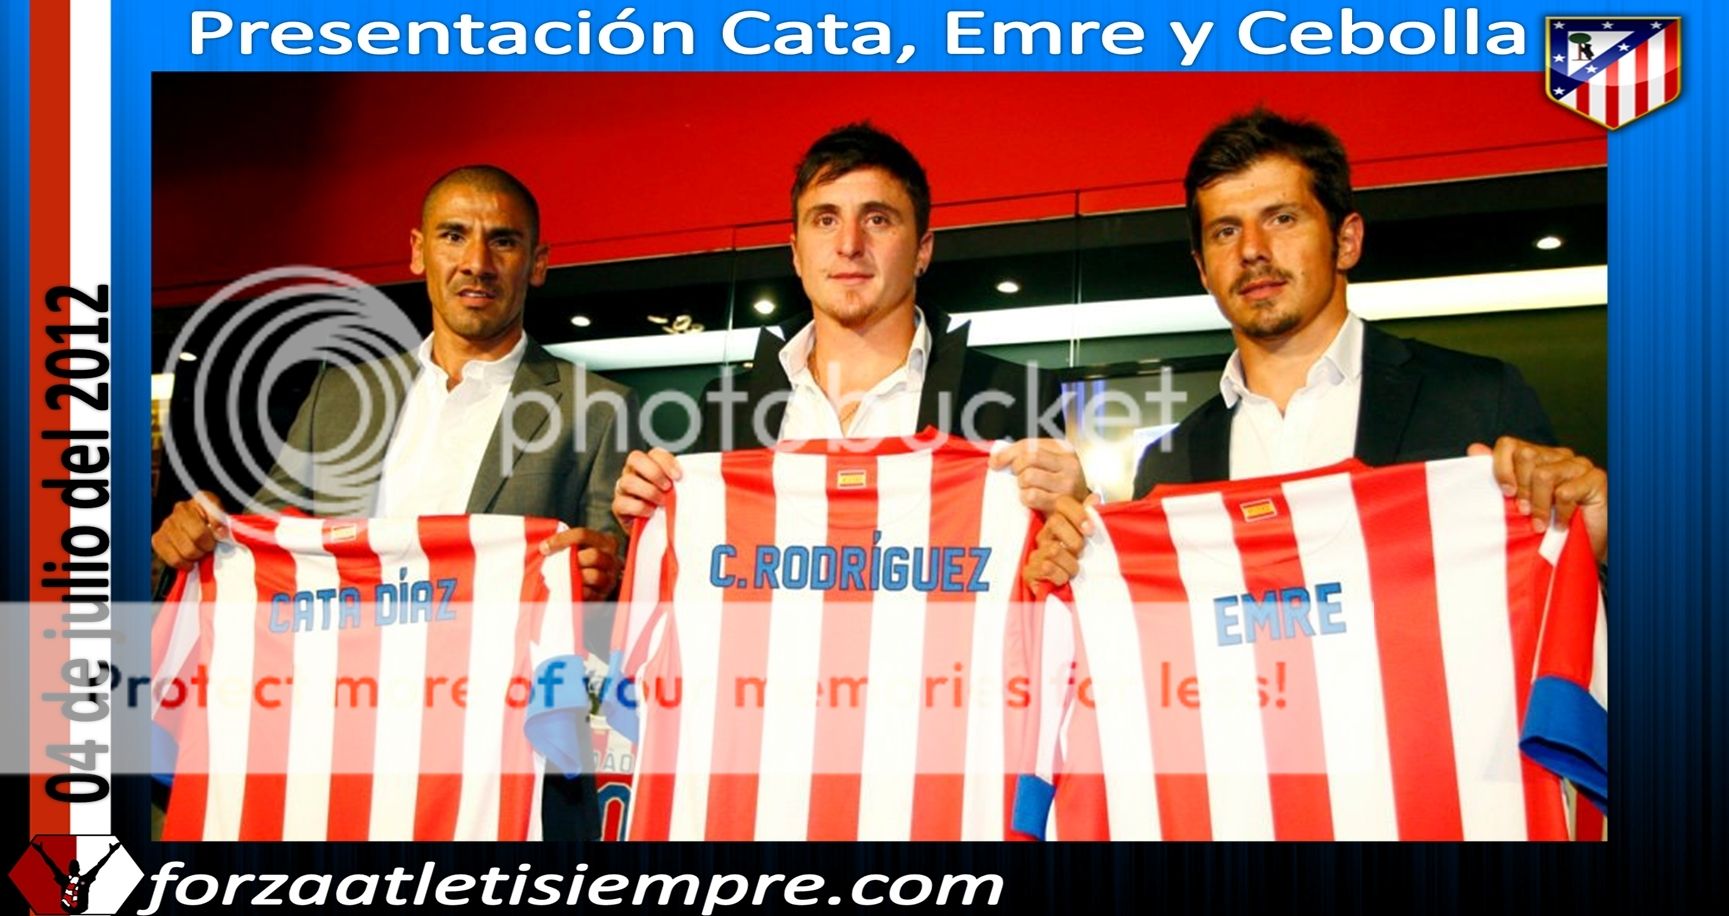 Atleti presenta a Emre, Cata y Rodríguez (contiene imágenes) 008Copiar-2